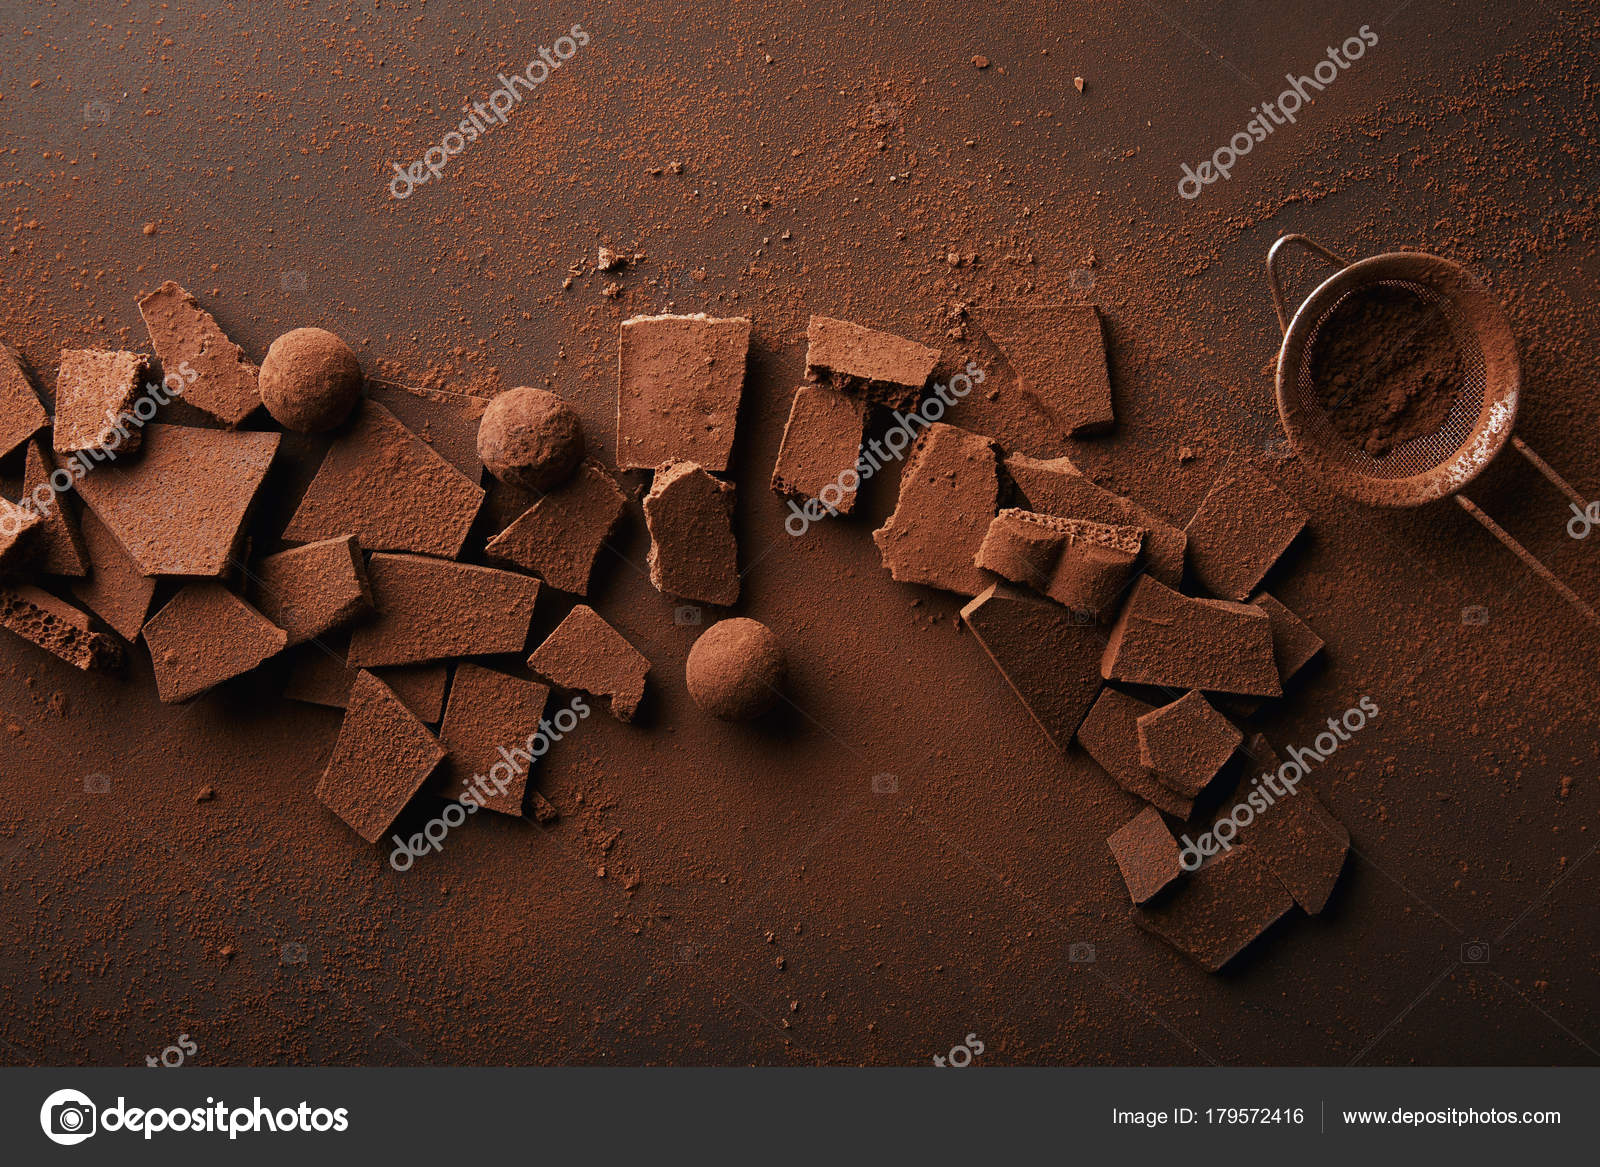 チョコレート写真素材 ロイヤリティフリーチョコレート画像 Depositphotos